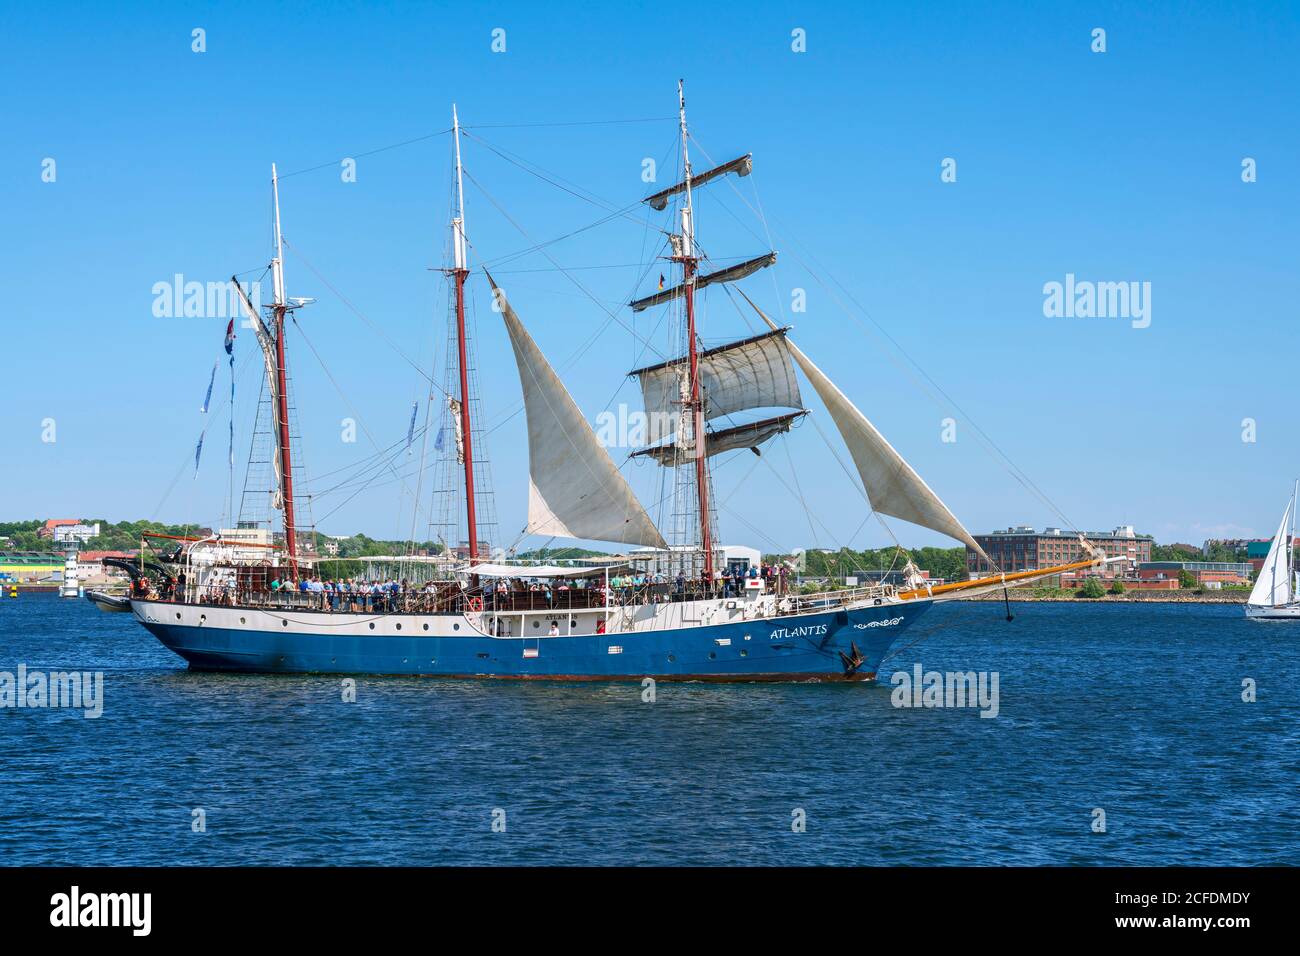 Deutschland, Schleswig-Holstein, Kiel, Segelschiff Atlantis, erbaut 1905 als Leuchtschiff, umgebaut 1984. Nutzen Sie heute, Tourismus. Kiel Woche 2019 Stockfoto